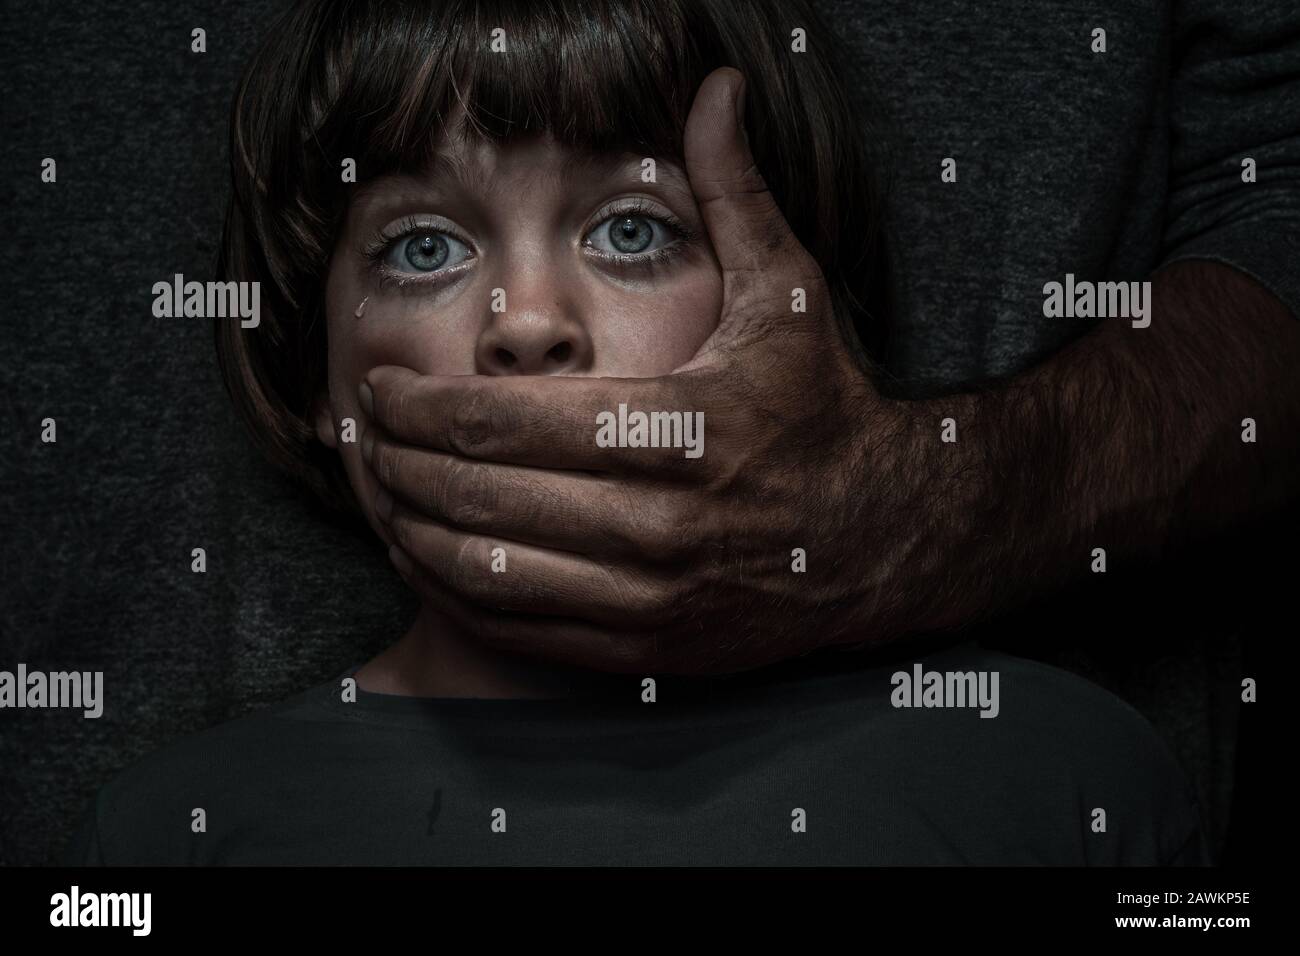 Concepto de abuso infantil. Retrato de un niño asiduo por un adulto agresivo Foto de stock